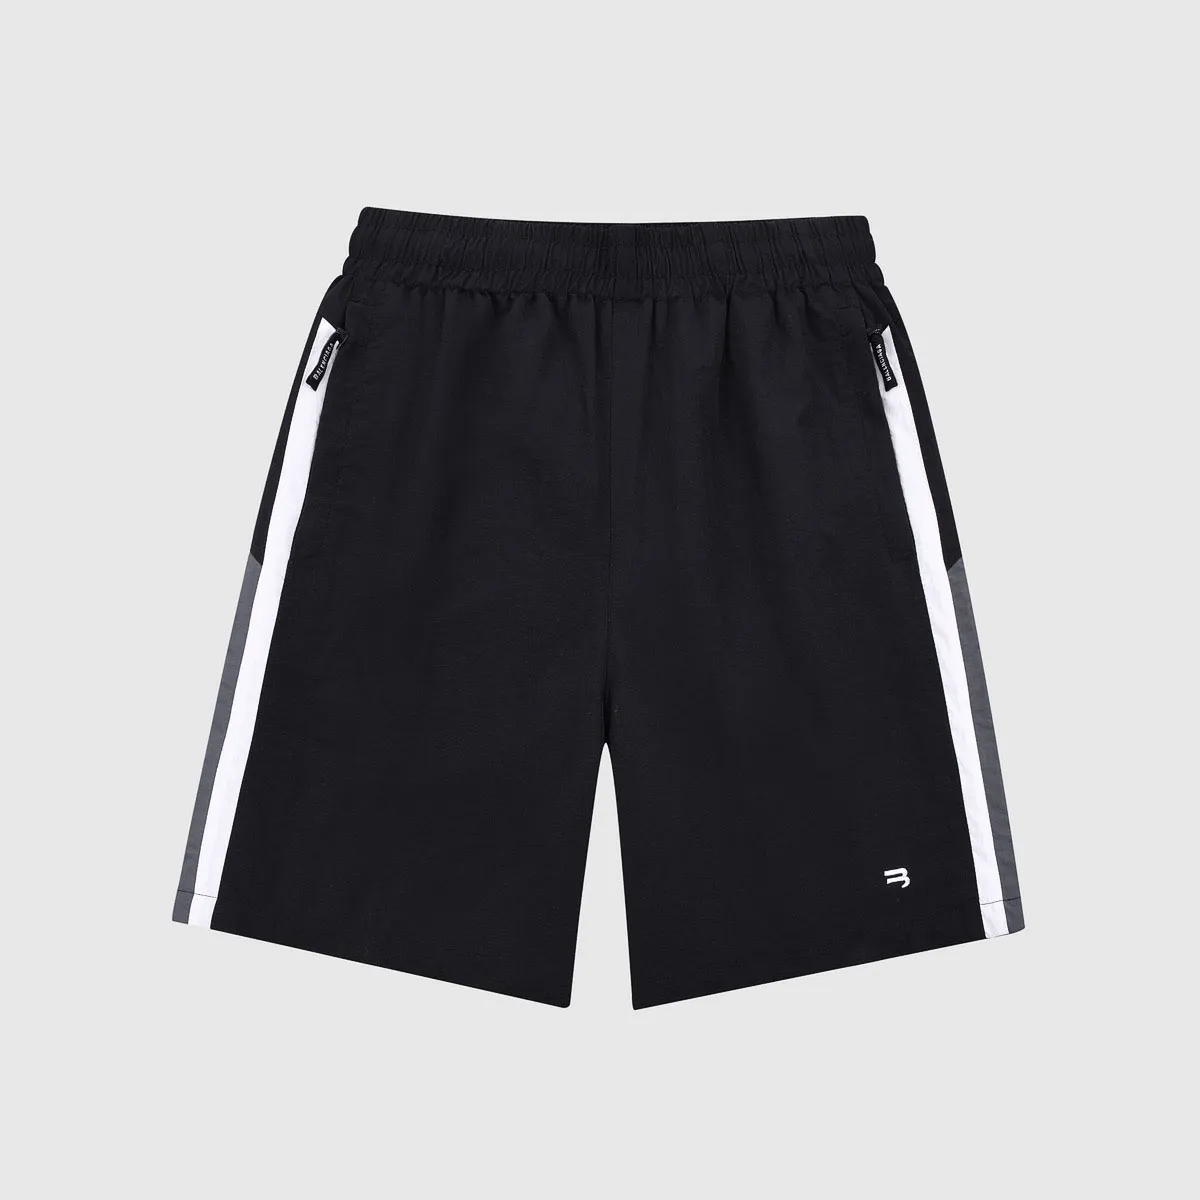 Shorts plus size maschile abiti estivi in stile polare con spiaggia fuori dalla strada pura cotone lycra ee2d